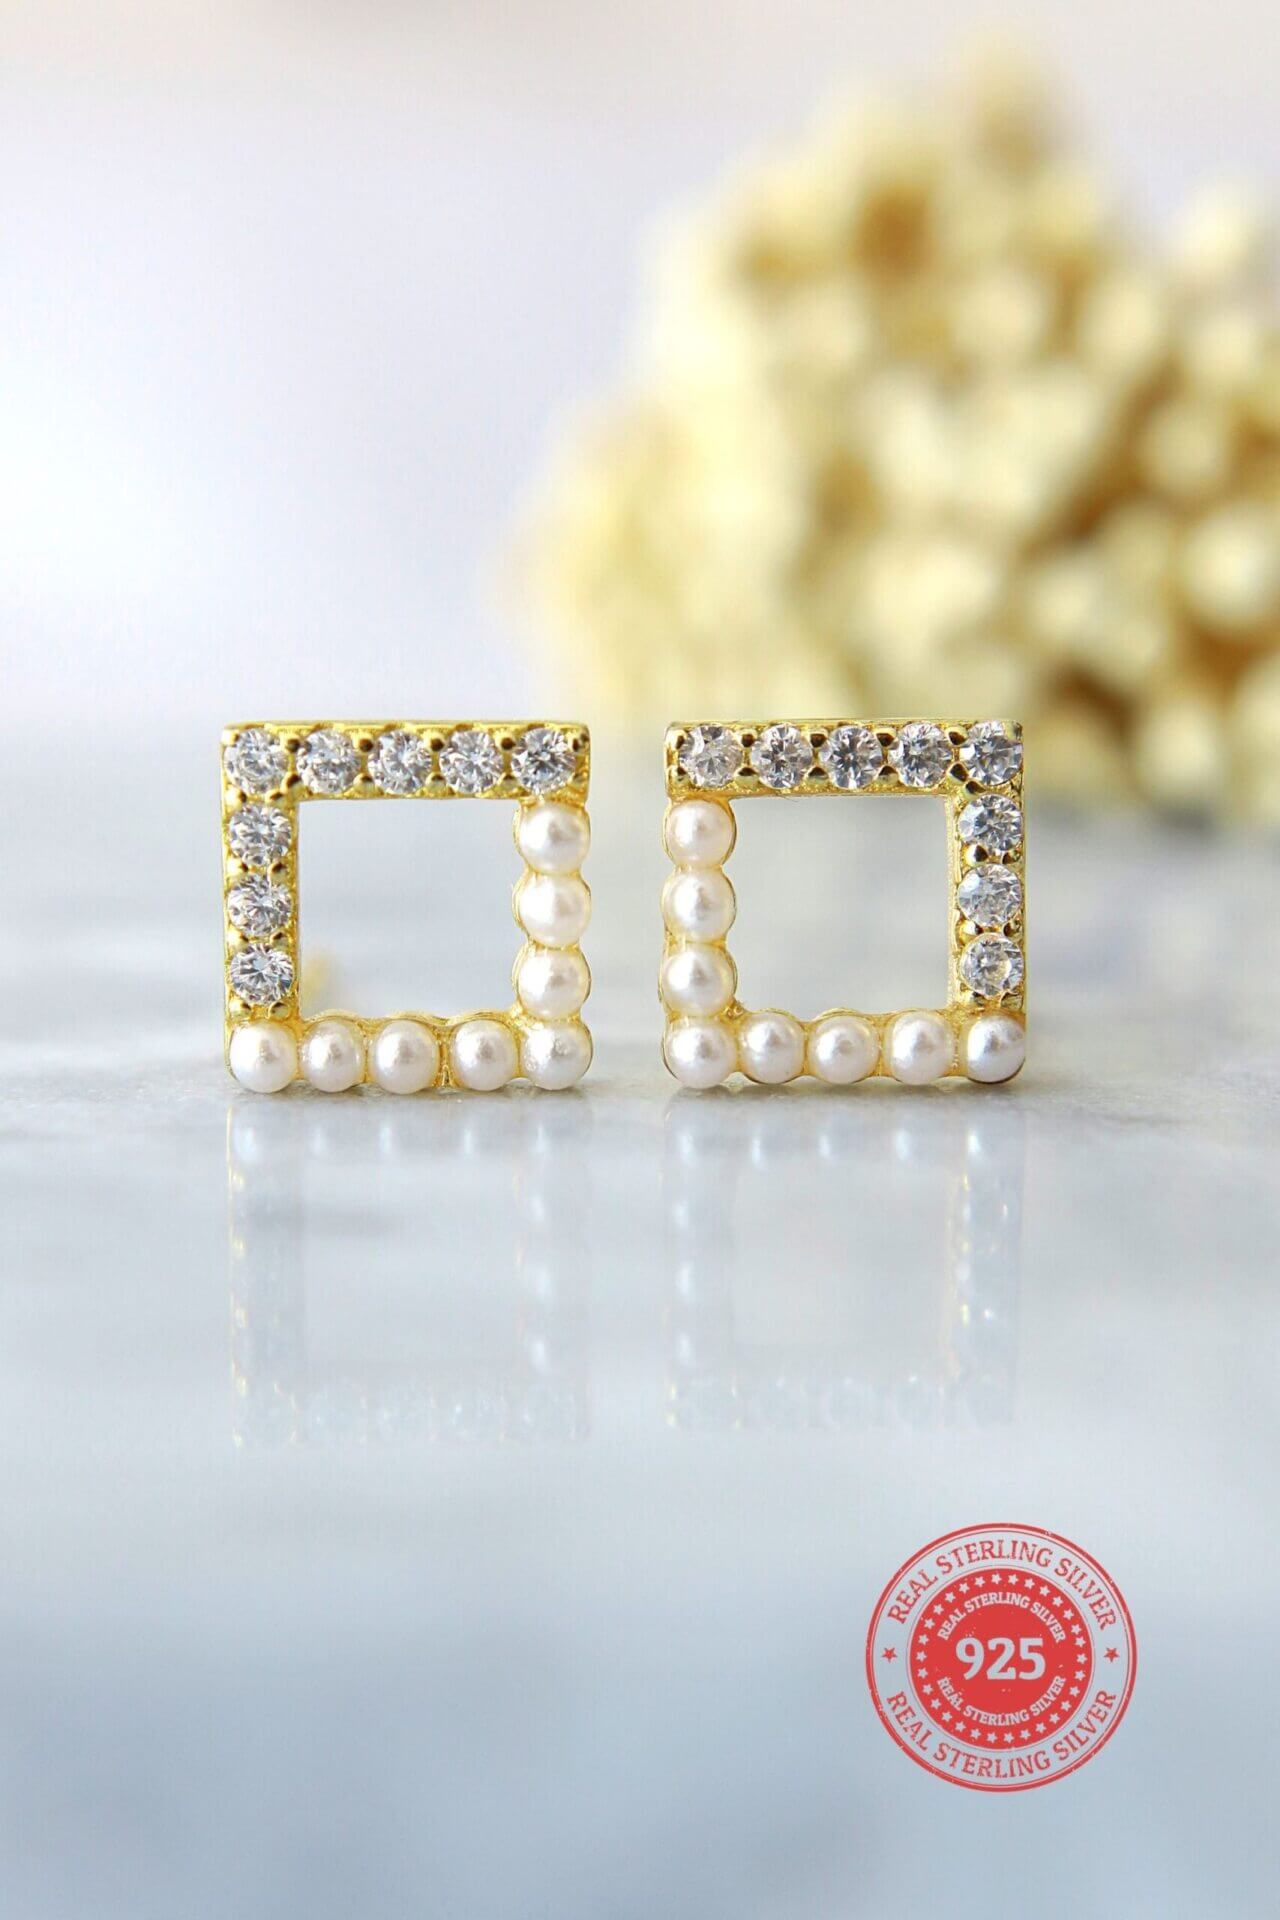 24 karat gold stud earrings